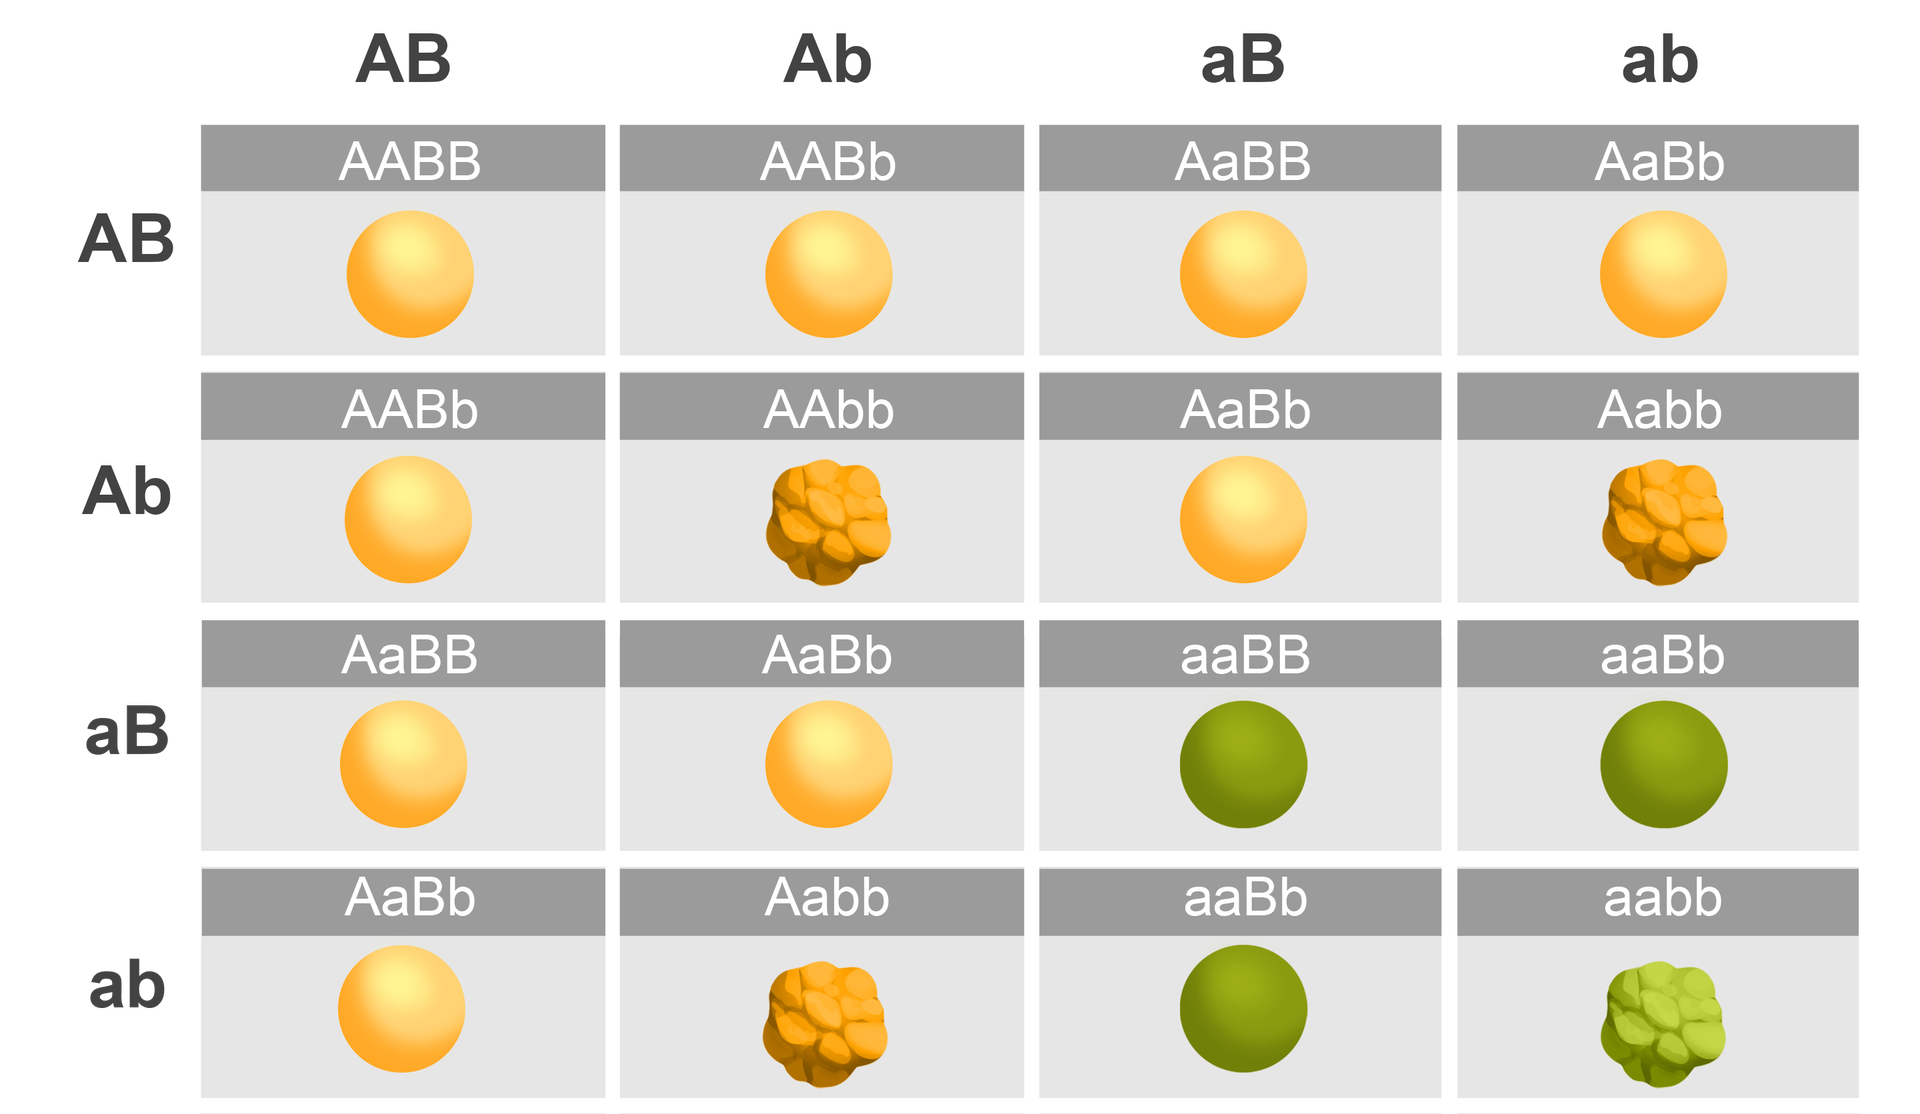 Ilustracja przedstawia krzyżówkę genetyczną ukazującą fenotypy i genotypy uzyskane w pokoleniu F2. Krzyżówki są następujące: z AB (duże A, duże B) i AB (duże A, duże B) powstaje genotyp AABB – dwa duże A, dwa duże B (żółta kulka), z AB (duże A, duże B) i Ab (duże A, małe b) powstaje AABb – dwa duże A, duże B, małe b (żółta kulka), z AB (duże A, małe b) i aB (małe a, duże B) powstaje AaBB (duże A, małe a, dwa duże B) (żółta kulka), połączenie AB (duże A, duże B) i ab (małe a, małe b) daje genotyp AaBb – duże A, małe a, duże B, małe b (żółta kulka). Następnie z połączenia AbAB (duże A, małe b, duże A, duże B) powstaje genotyp AABb – dwa duże A, duże B, małe b (żółta kulka), z Ab (duże A, małe b) i Ab (duże A, małe b) – Aabb (duże A, małe a, dwa małe b) (żółta ziarnista kulka), Ab (duże A, małe b) połączone z aB (małe a, duże B) daje AaBb (duże a, małe a, duże B, małe b) (żółta kulka), Ab (duże A, małe b) i ab (małe a, małe b) daje genotyp Aabb – duże A, małe a, dwa małe b (ziarnista żółta kulka). Z połączenia aB (małe a, duże B) z AB (duże A, duże B) powstaje genotyp AaBB – duże A, małe a, dwa duże B) (żółta kulka), aB (małe a, duże B) połączone z Ab (duże A, małe b) daje genotyp AaBb – duże A, małe a, duże B, małe b (żółta kulka), aB (małe a, duże B) dodać aB (małe a, duże B) daje aaBB – dwa małe a, dwa małe B (zielona kulka), natomiast aB (małe a, duże B) połączone z ab (małe a, małe b) daje genotyp aaBb – dwa małe a, duże B, małe b (zielona kulka). W ostatnim typie krzyżowania z połączenia ab (małe a, małe b) z AB (duże A, duże B) powstaje genotyp Aabb – duże A, małe a, dwa małe b (ziarnista żółta kulka), połączenie ab z aB (małe a, duże B) daje aaBb – dwa małe a, duże B, małe b (zielona kulka), natomiast połączenie ab (małe a, małe b) z ab (małe a, małe b) daje genotyp aabb (dwa małe a, dwa małe b) (ziarnista zielona kulka).